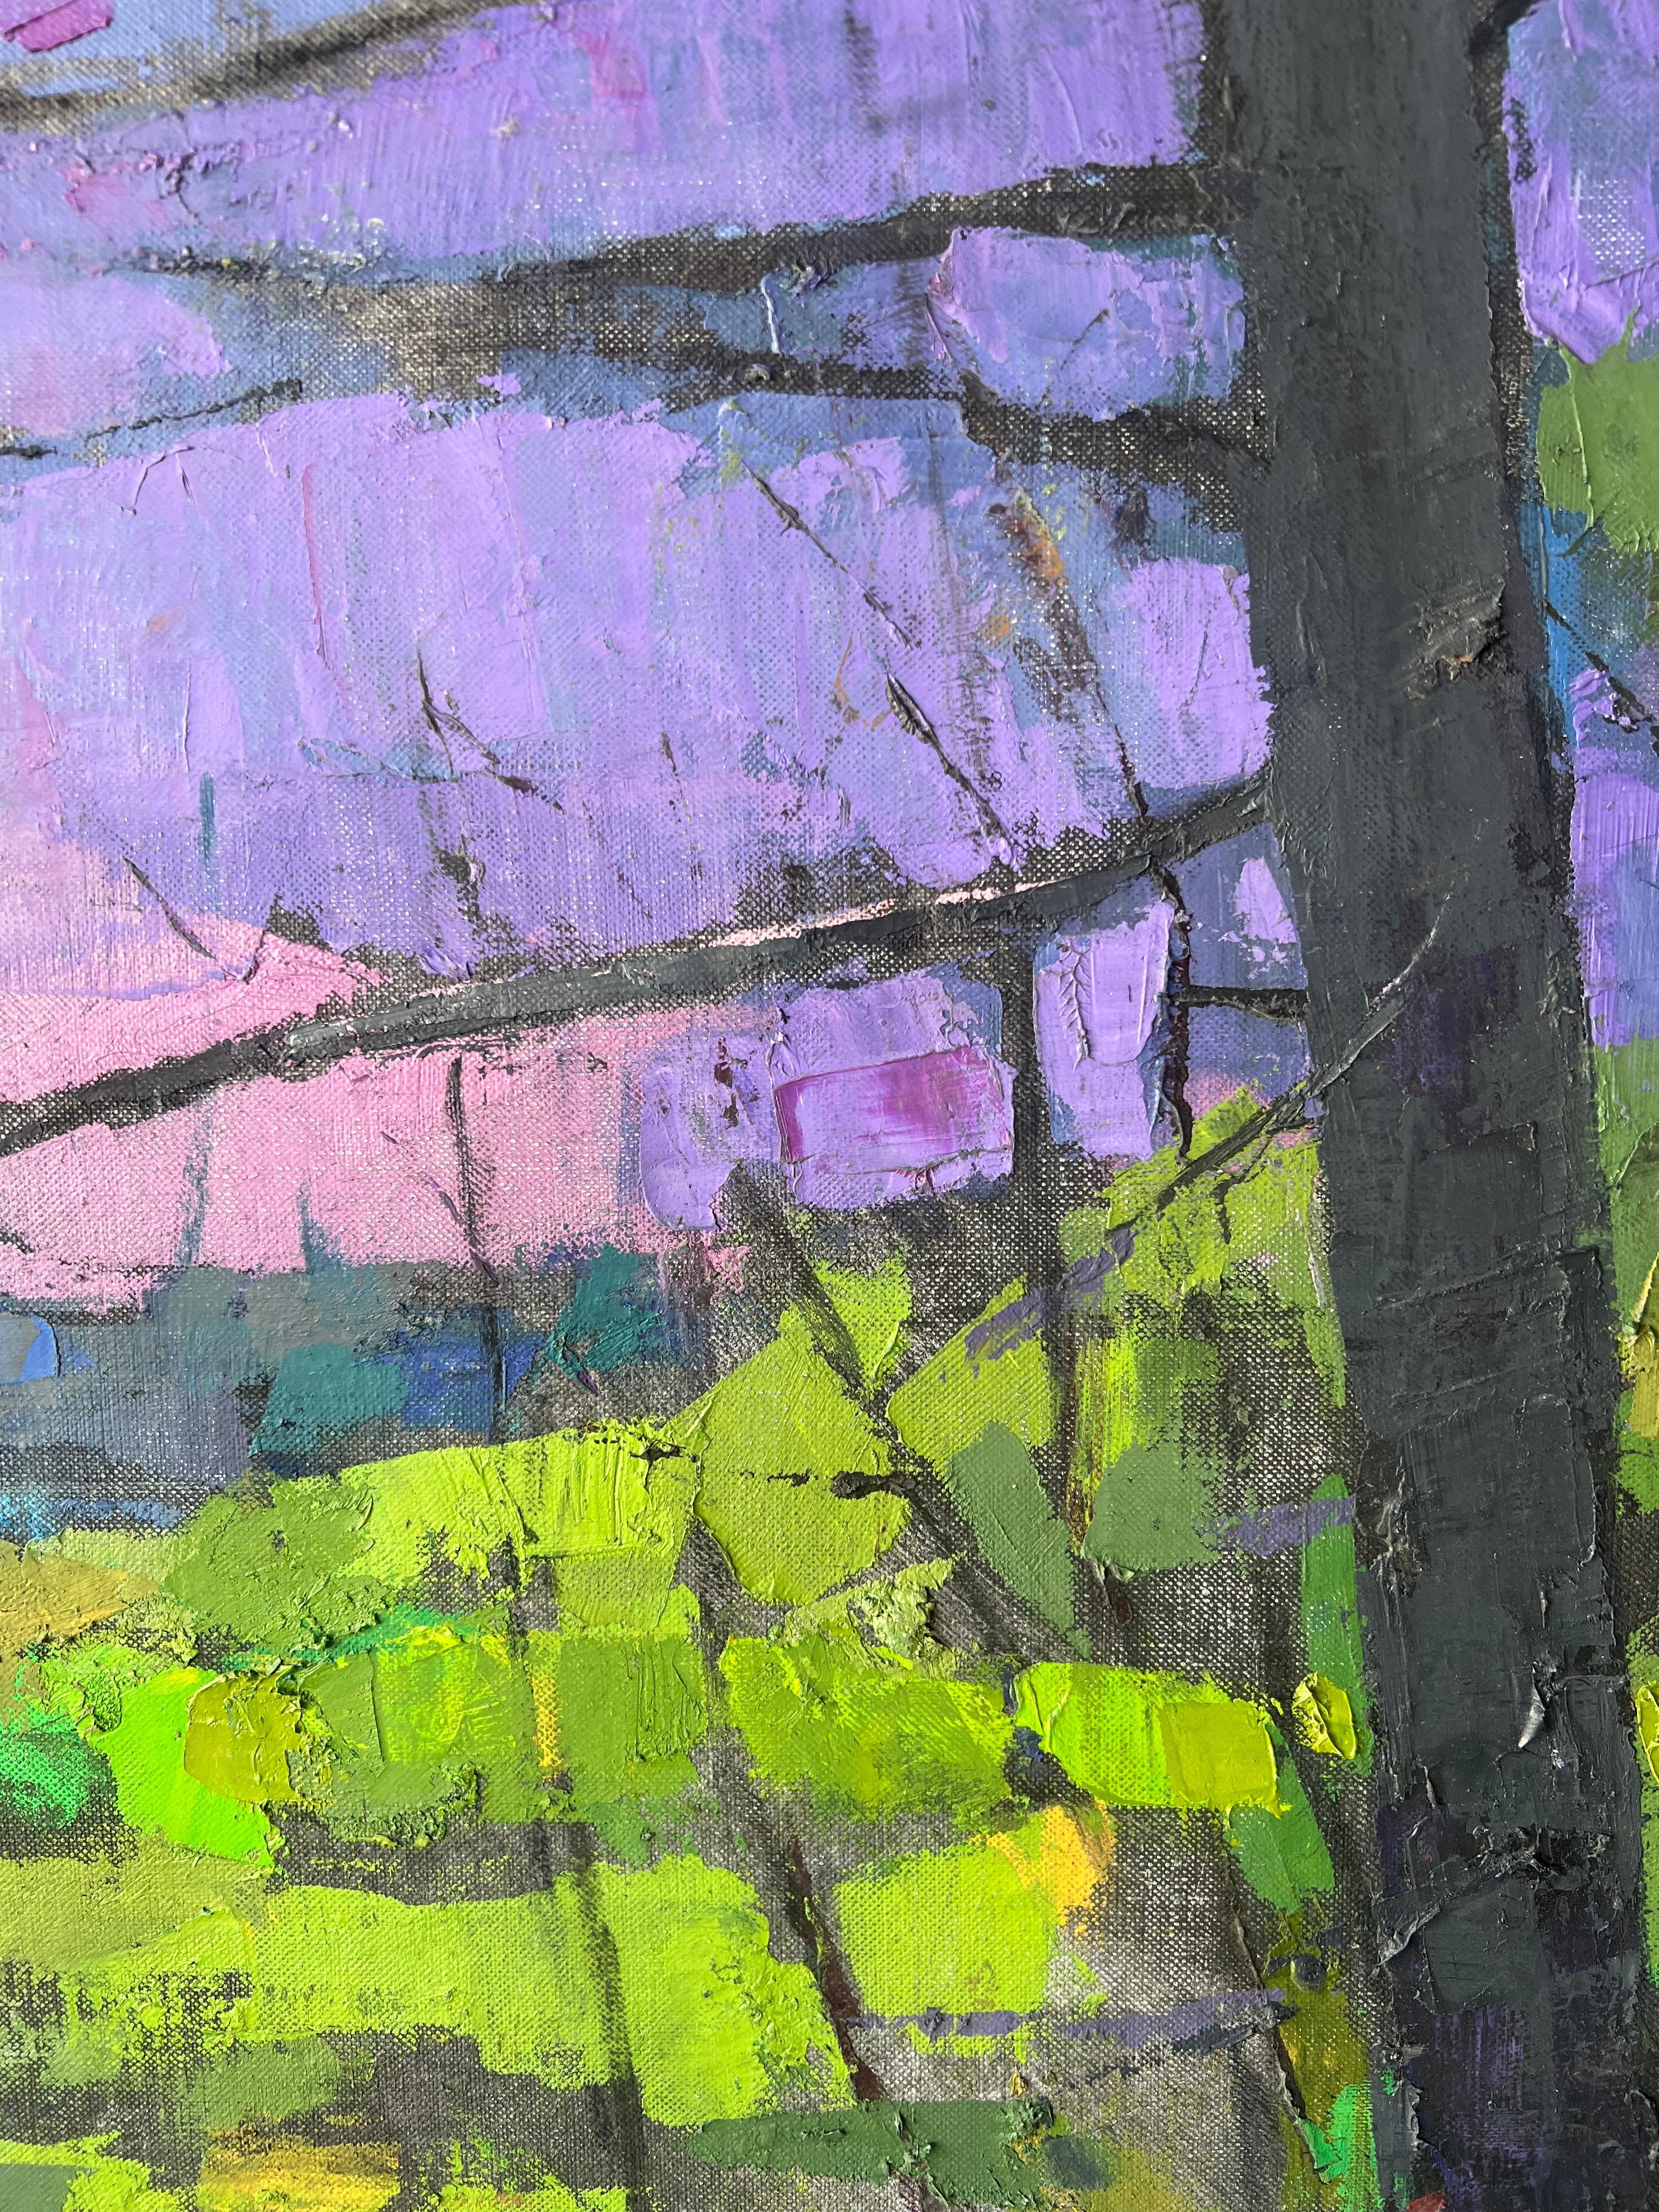 Peinture à l'huile « Moore Habitat II » à travers les bois, eau et ciel rose au loin - Gris Landscape Painting par Larry Horowitz